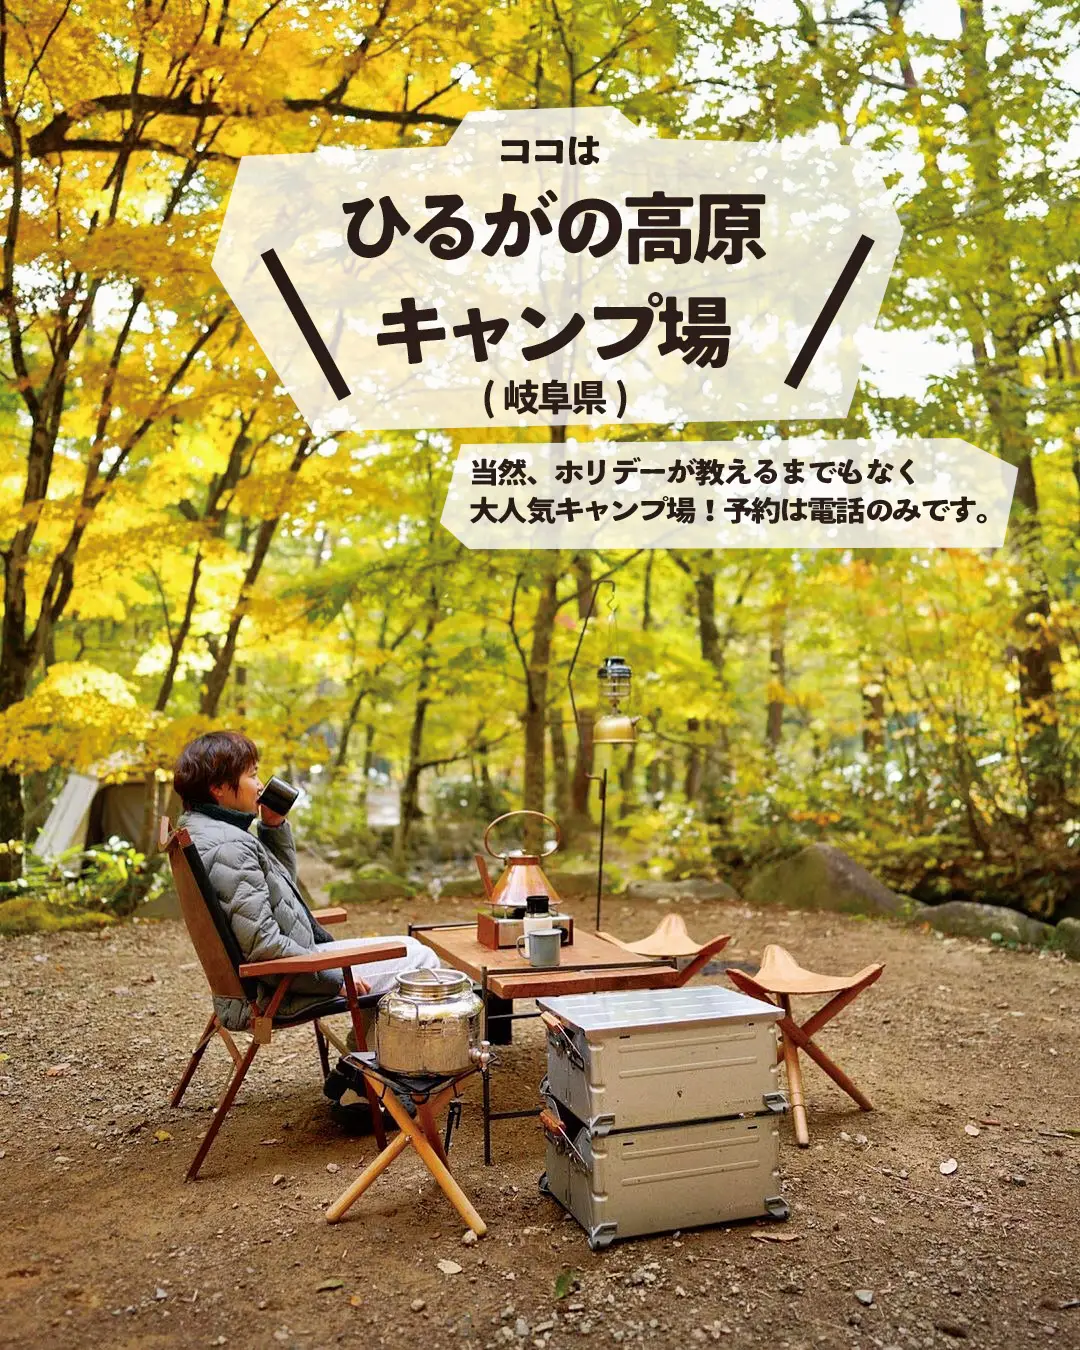 【岐阜】ココ、ホントは教えたくない💦美しすぎる林間キャンプ場の画像 (3枚目)